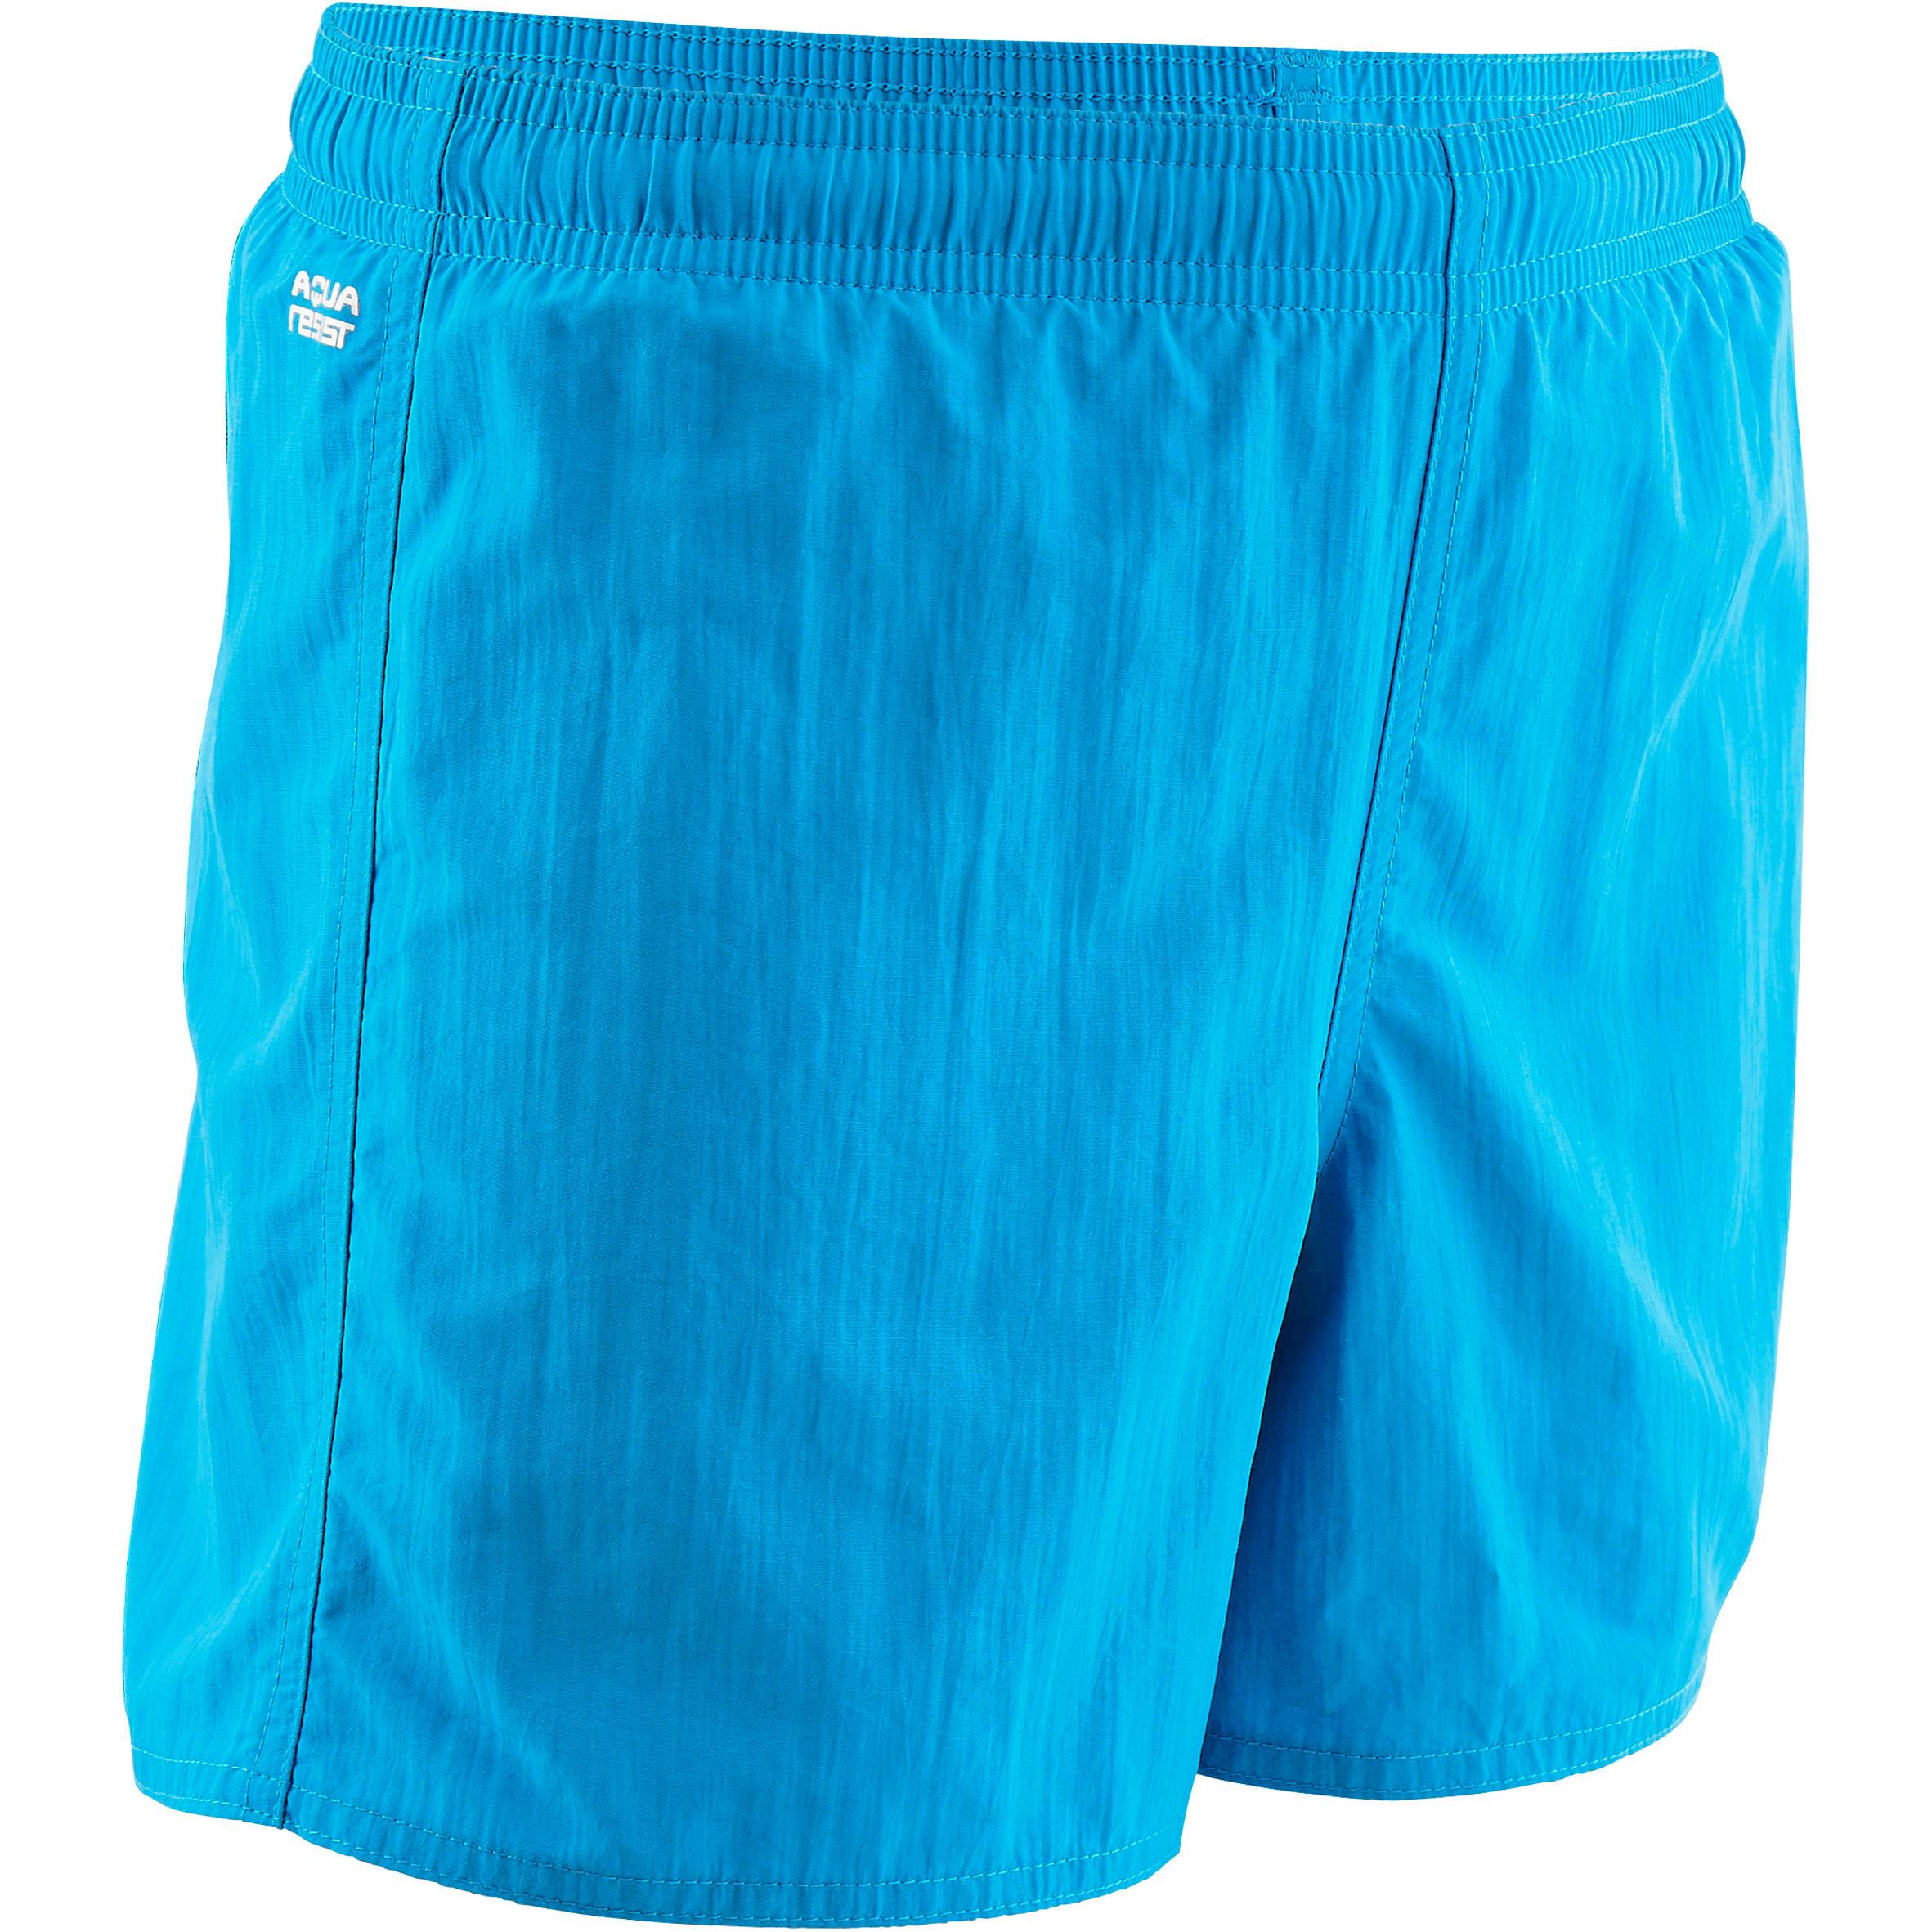 [ด่วน!! โปรโมชั่นมีจำนวนจำกัด] กางเกงว่ายน้ำขาสั้นสำหรับเด็กผู้ชายรุ่น 100 (สีฟ้า) สำหรับ ว่ายน้ำ